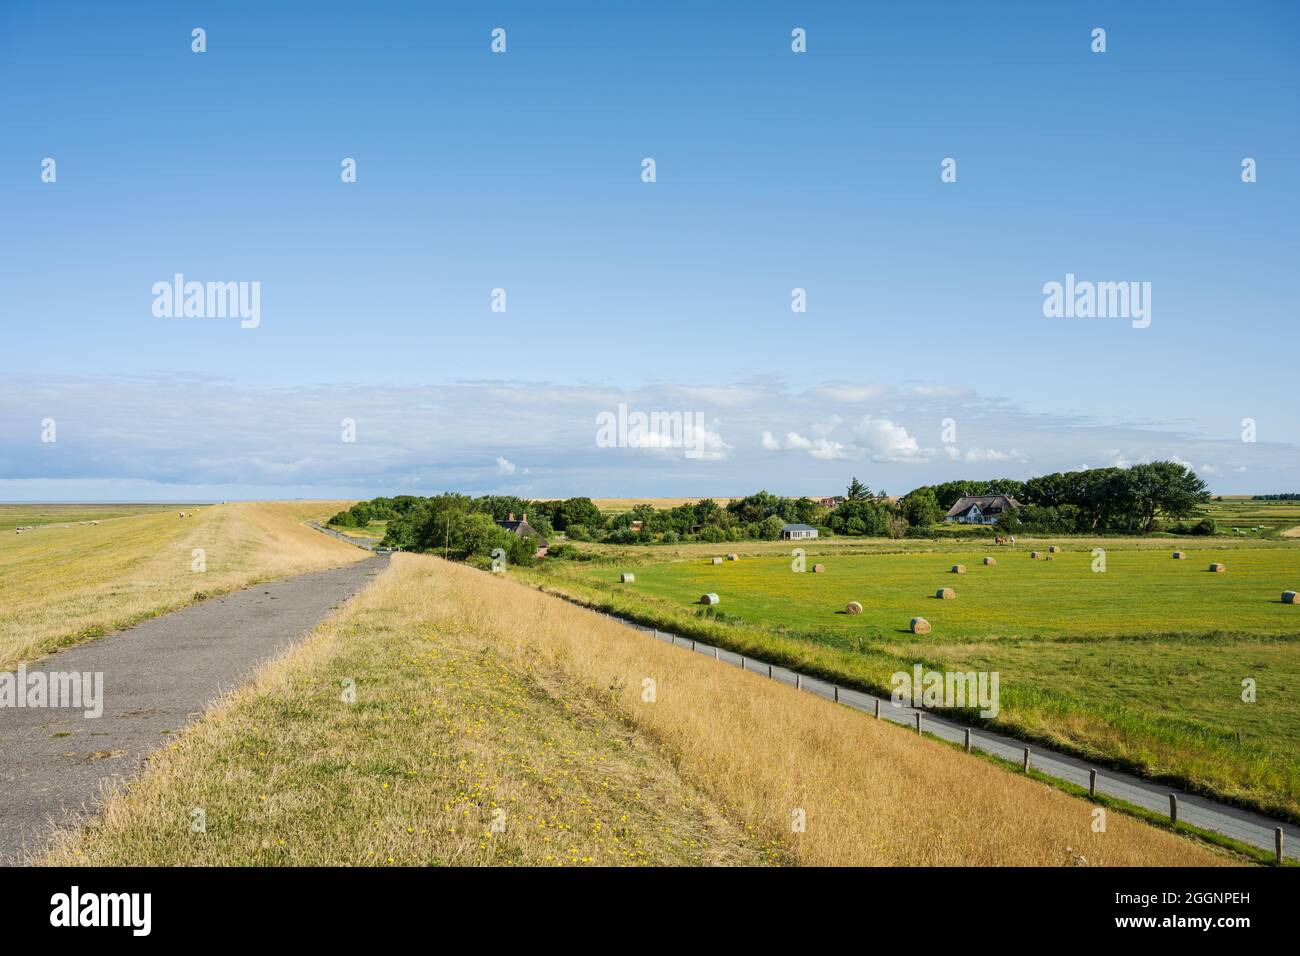 Deich an der Nordseeküste, dahinter ein Bauernhof und grüne Weiden Stock Photo